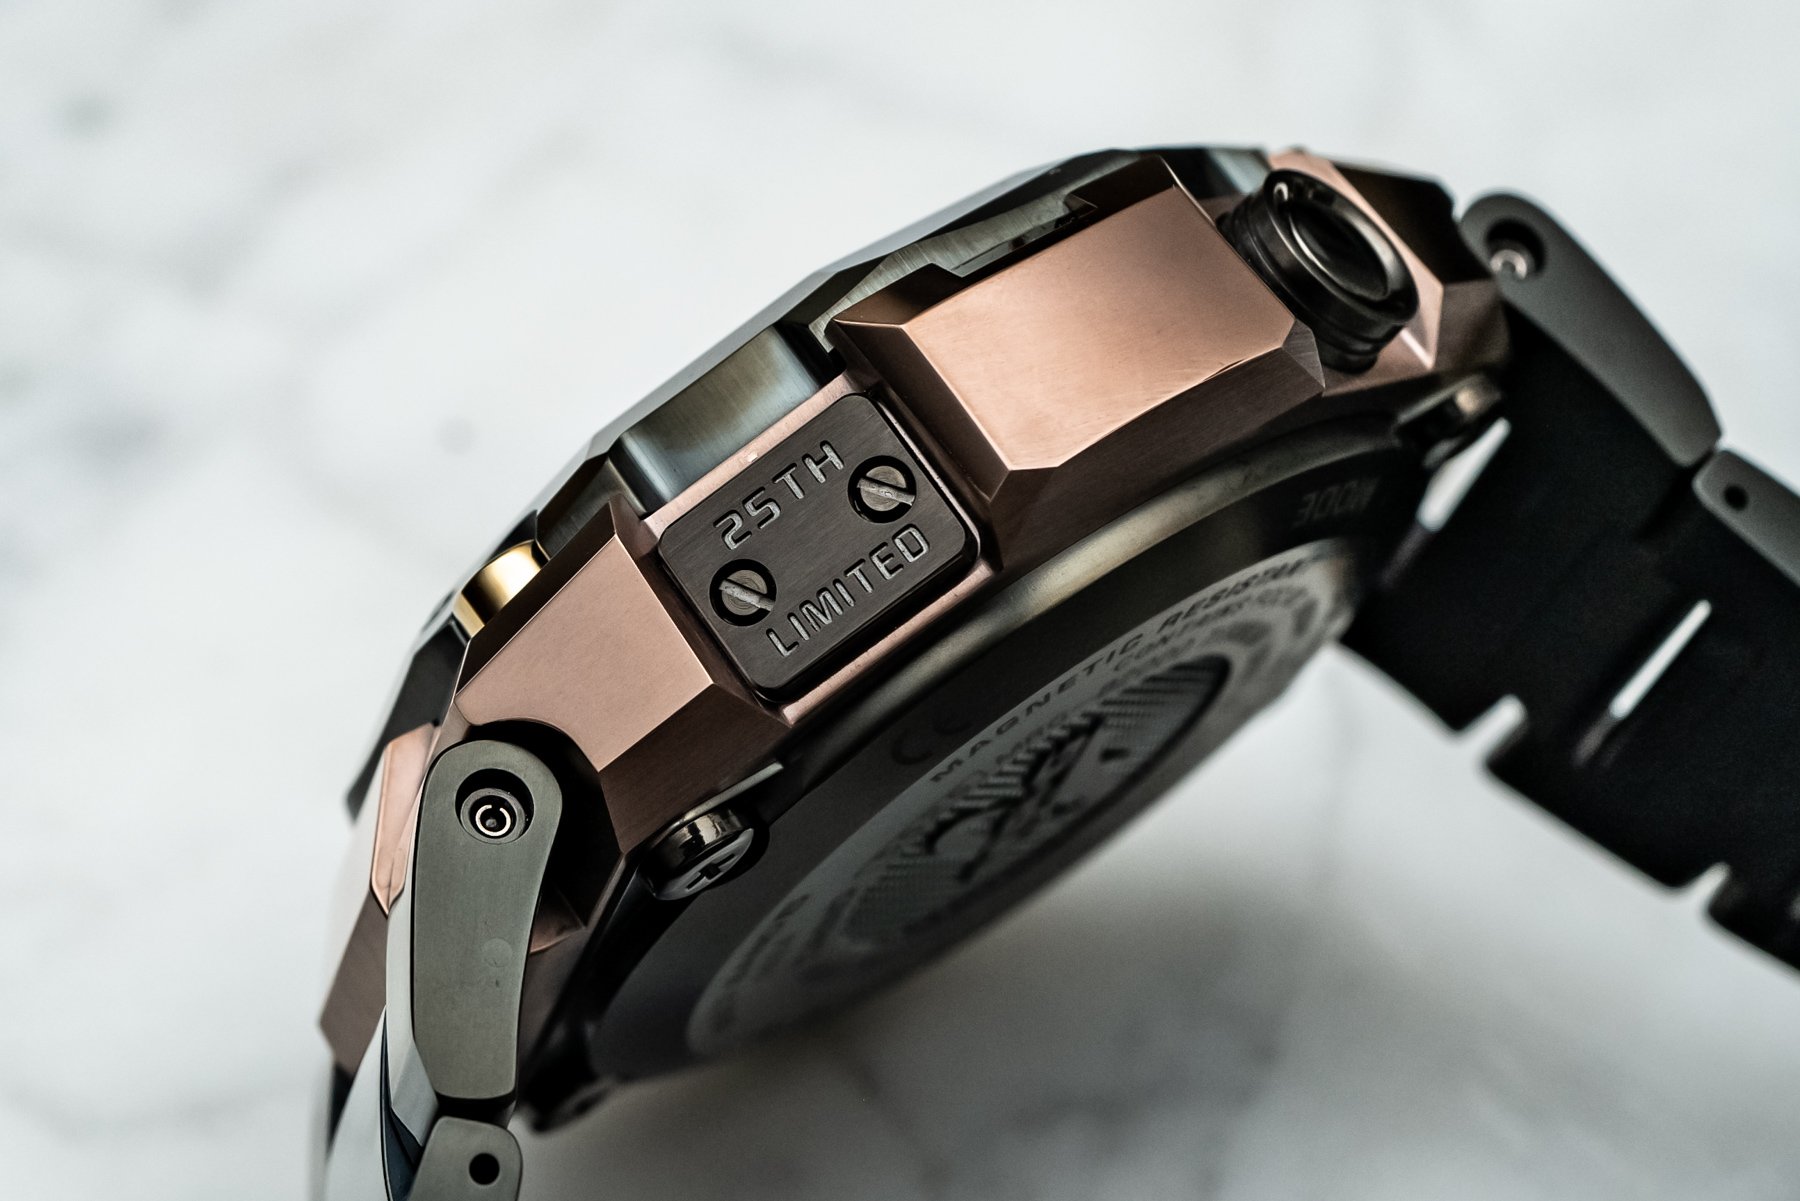 Часы Casio G-Shock MR-G Hana-Basara, вдохновленные самурайскими доспехами